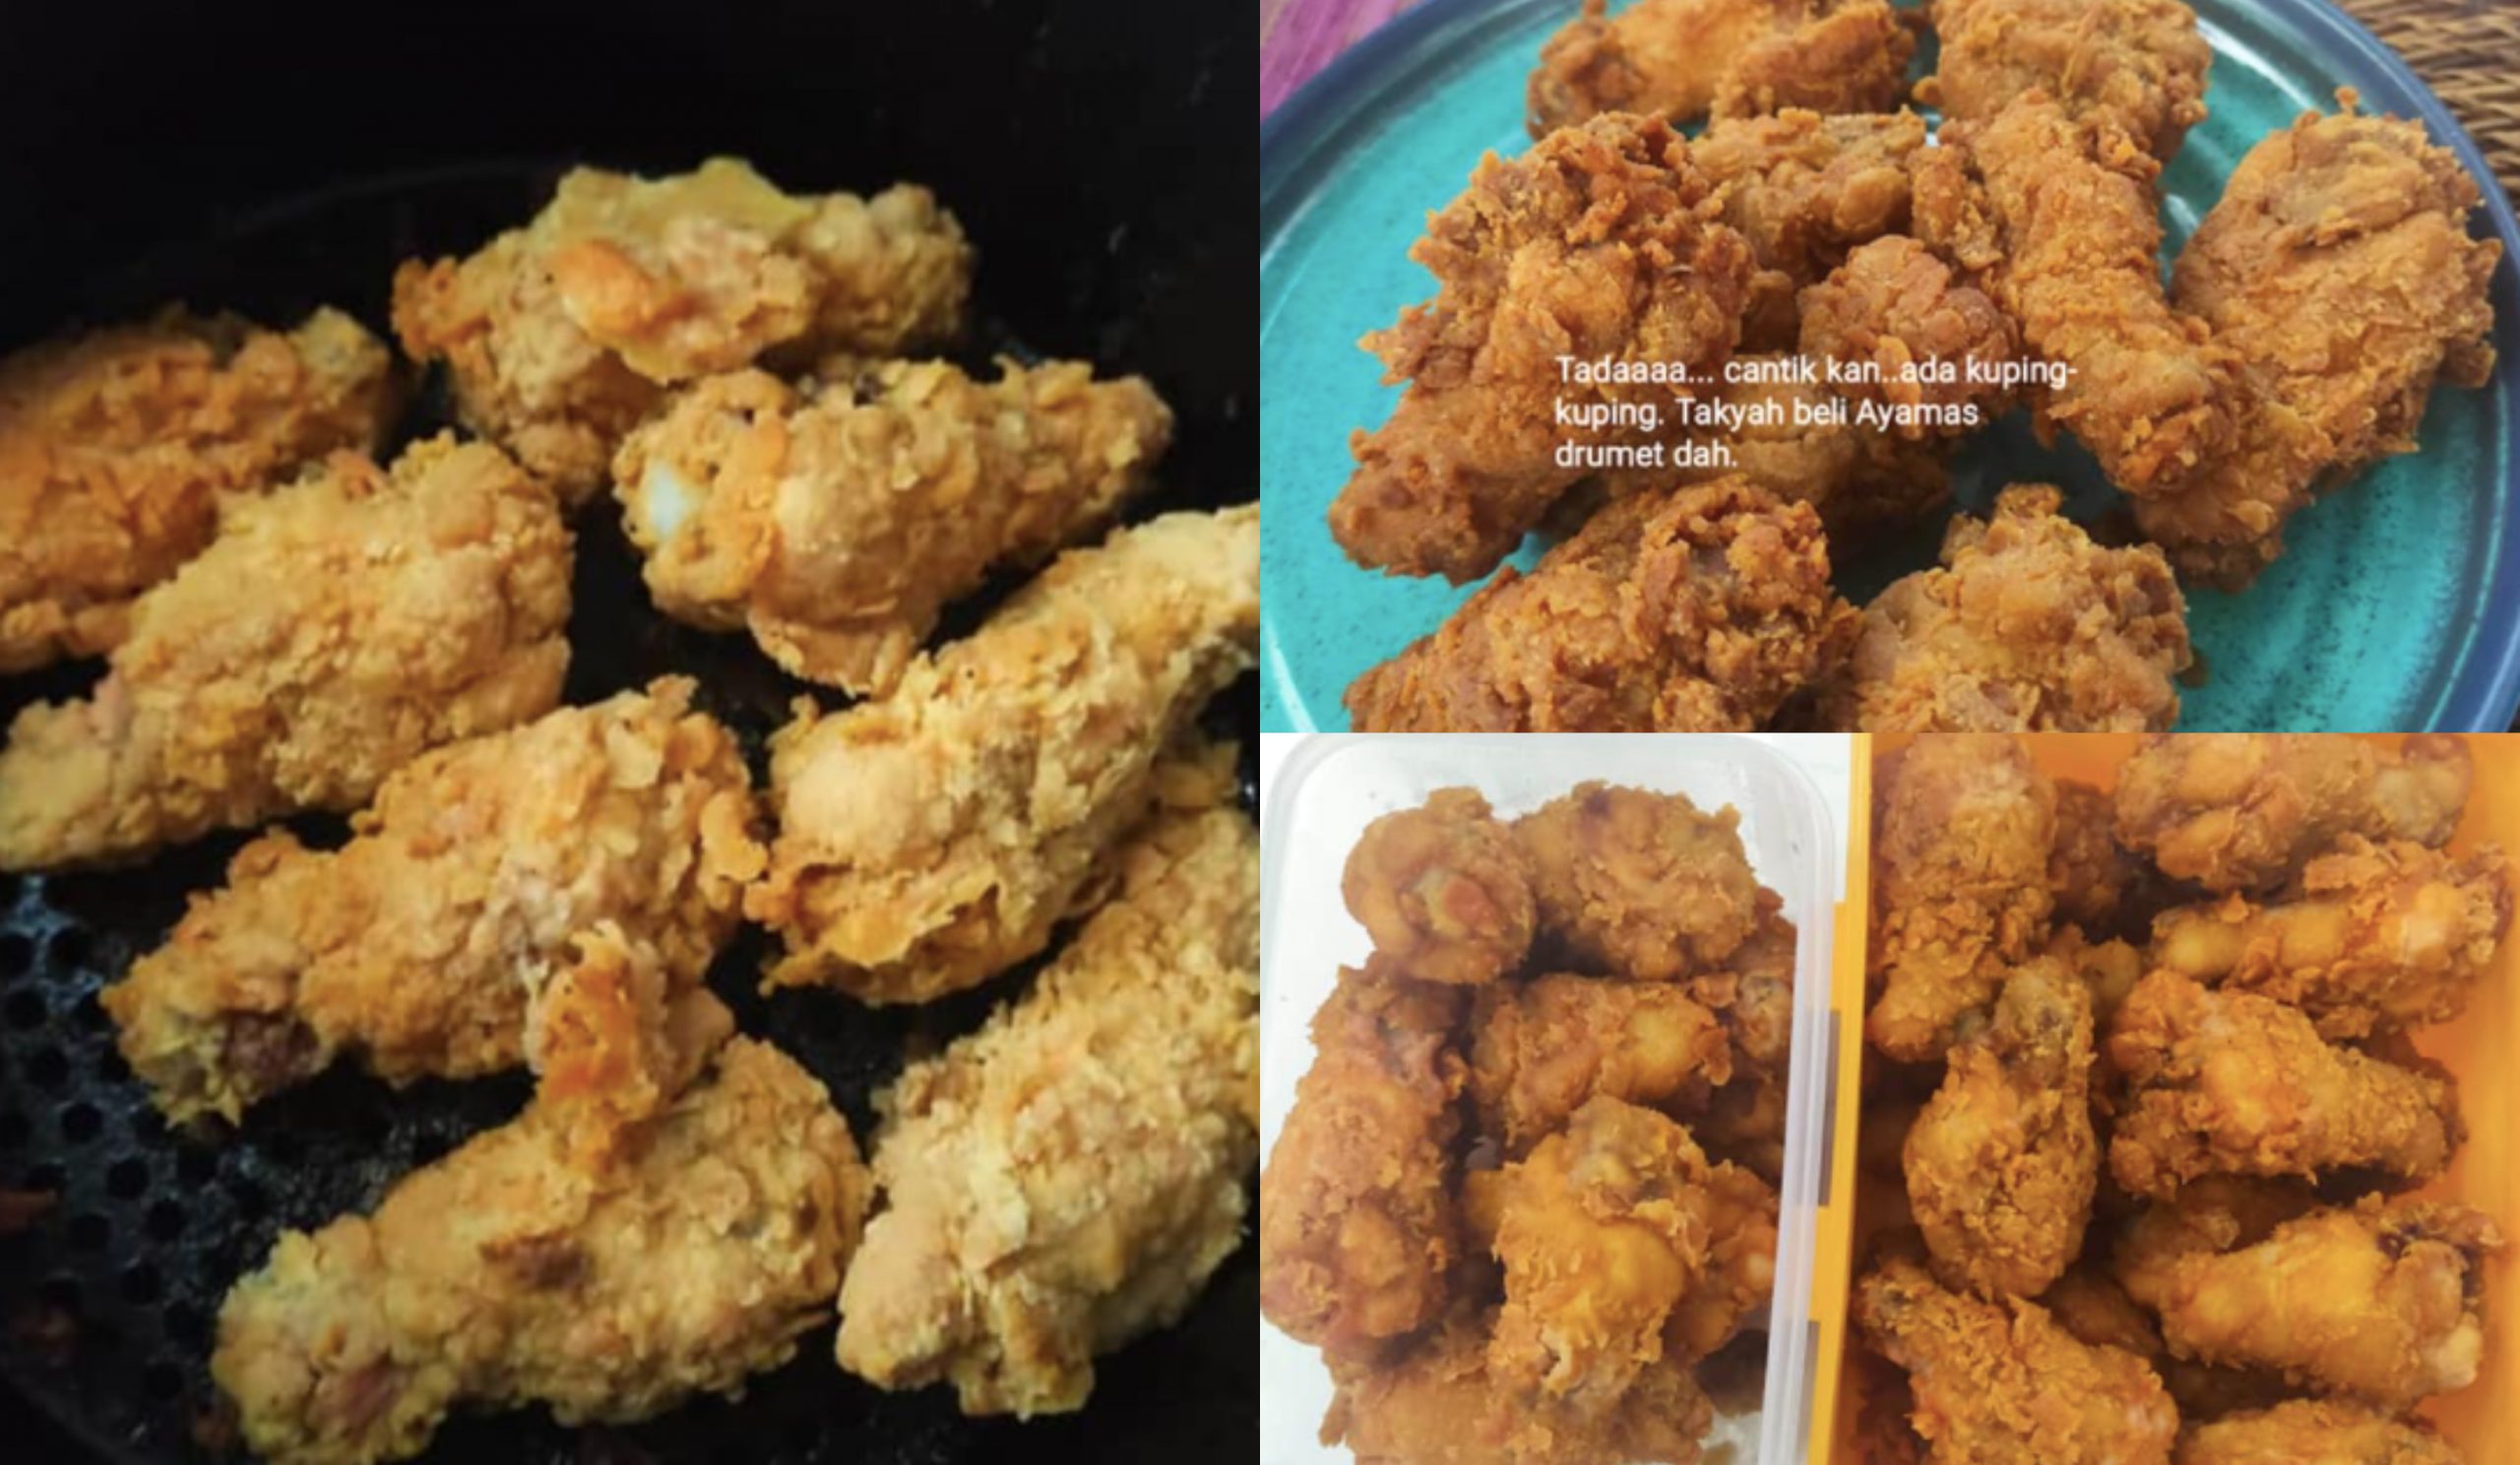 Resipi Mudah Ayam Goreng Ala KFC Guna Air Fyer, Anak-Anak Pun Boleh Buat Sendiri! Memang Sedap